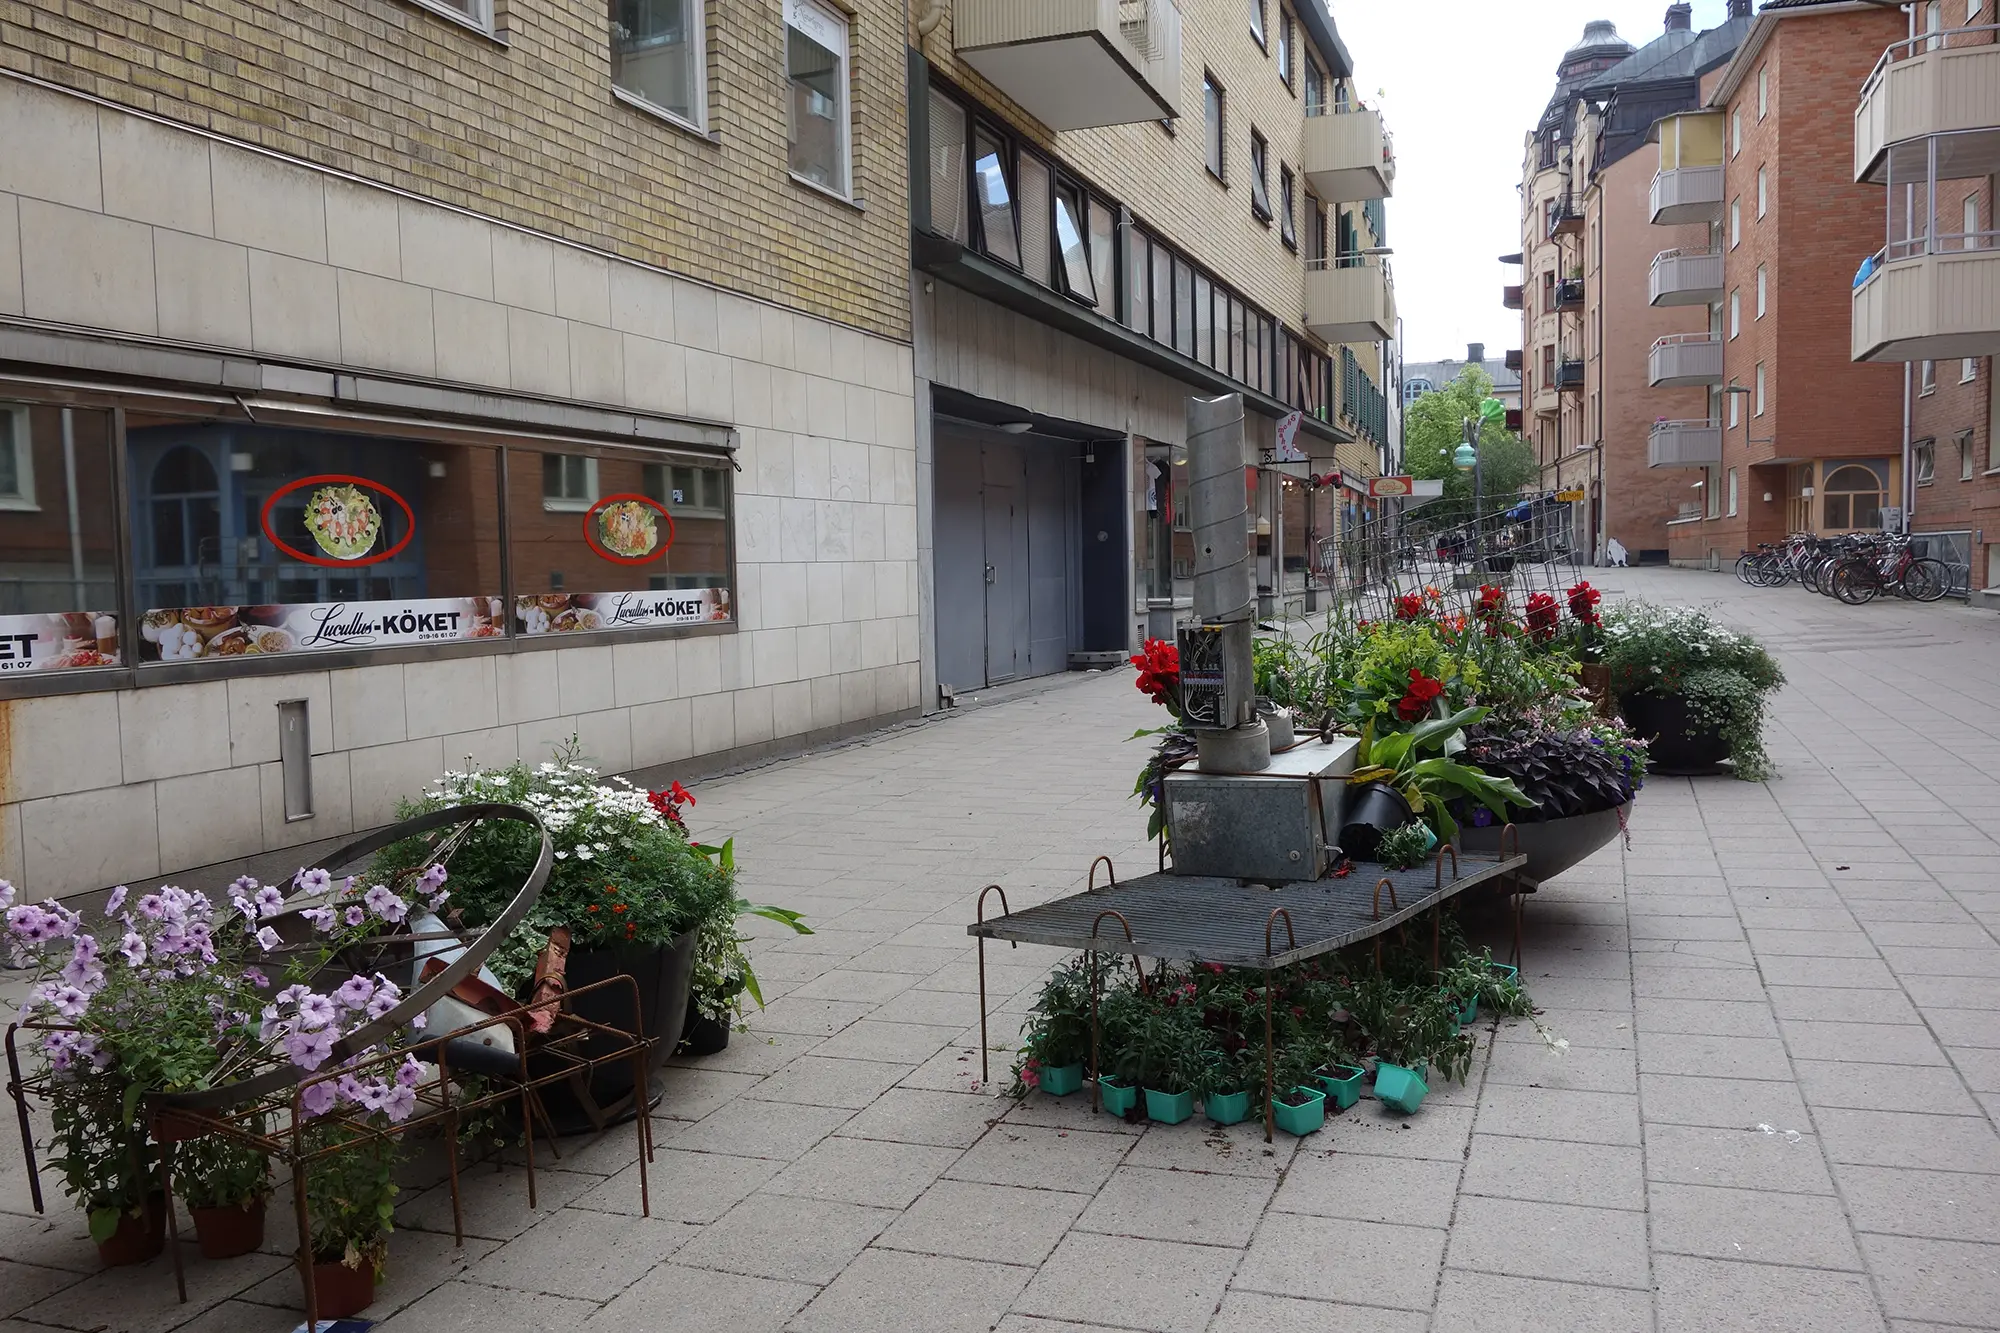 På en lång gata står två stora färgglada blomsterarrangemang placerade. Arrangemangen består av utspridda krukväxter och olika slags metallobjekt placerade i två grupper.